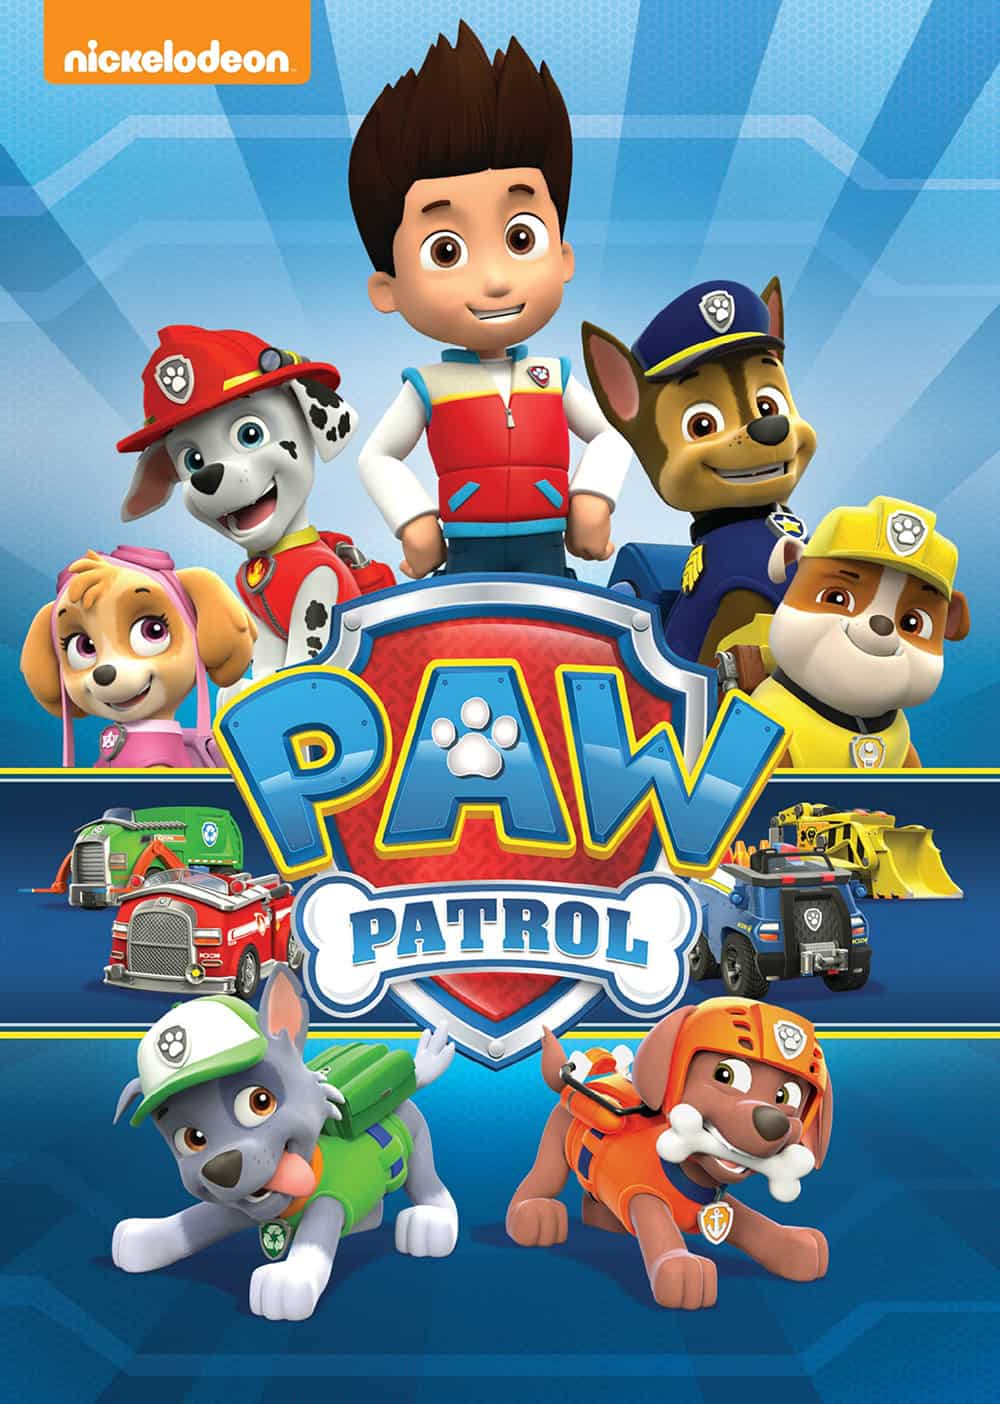 Paw Patrol DVD